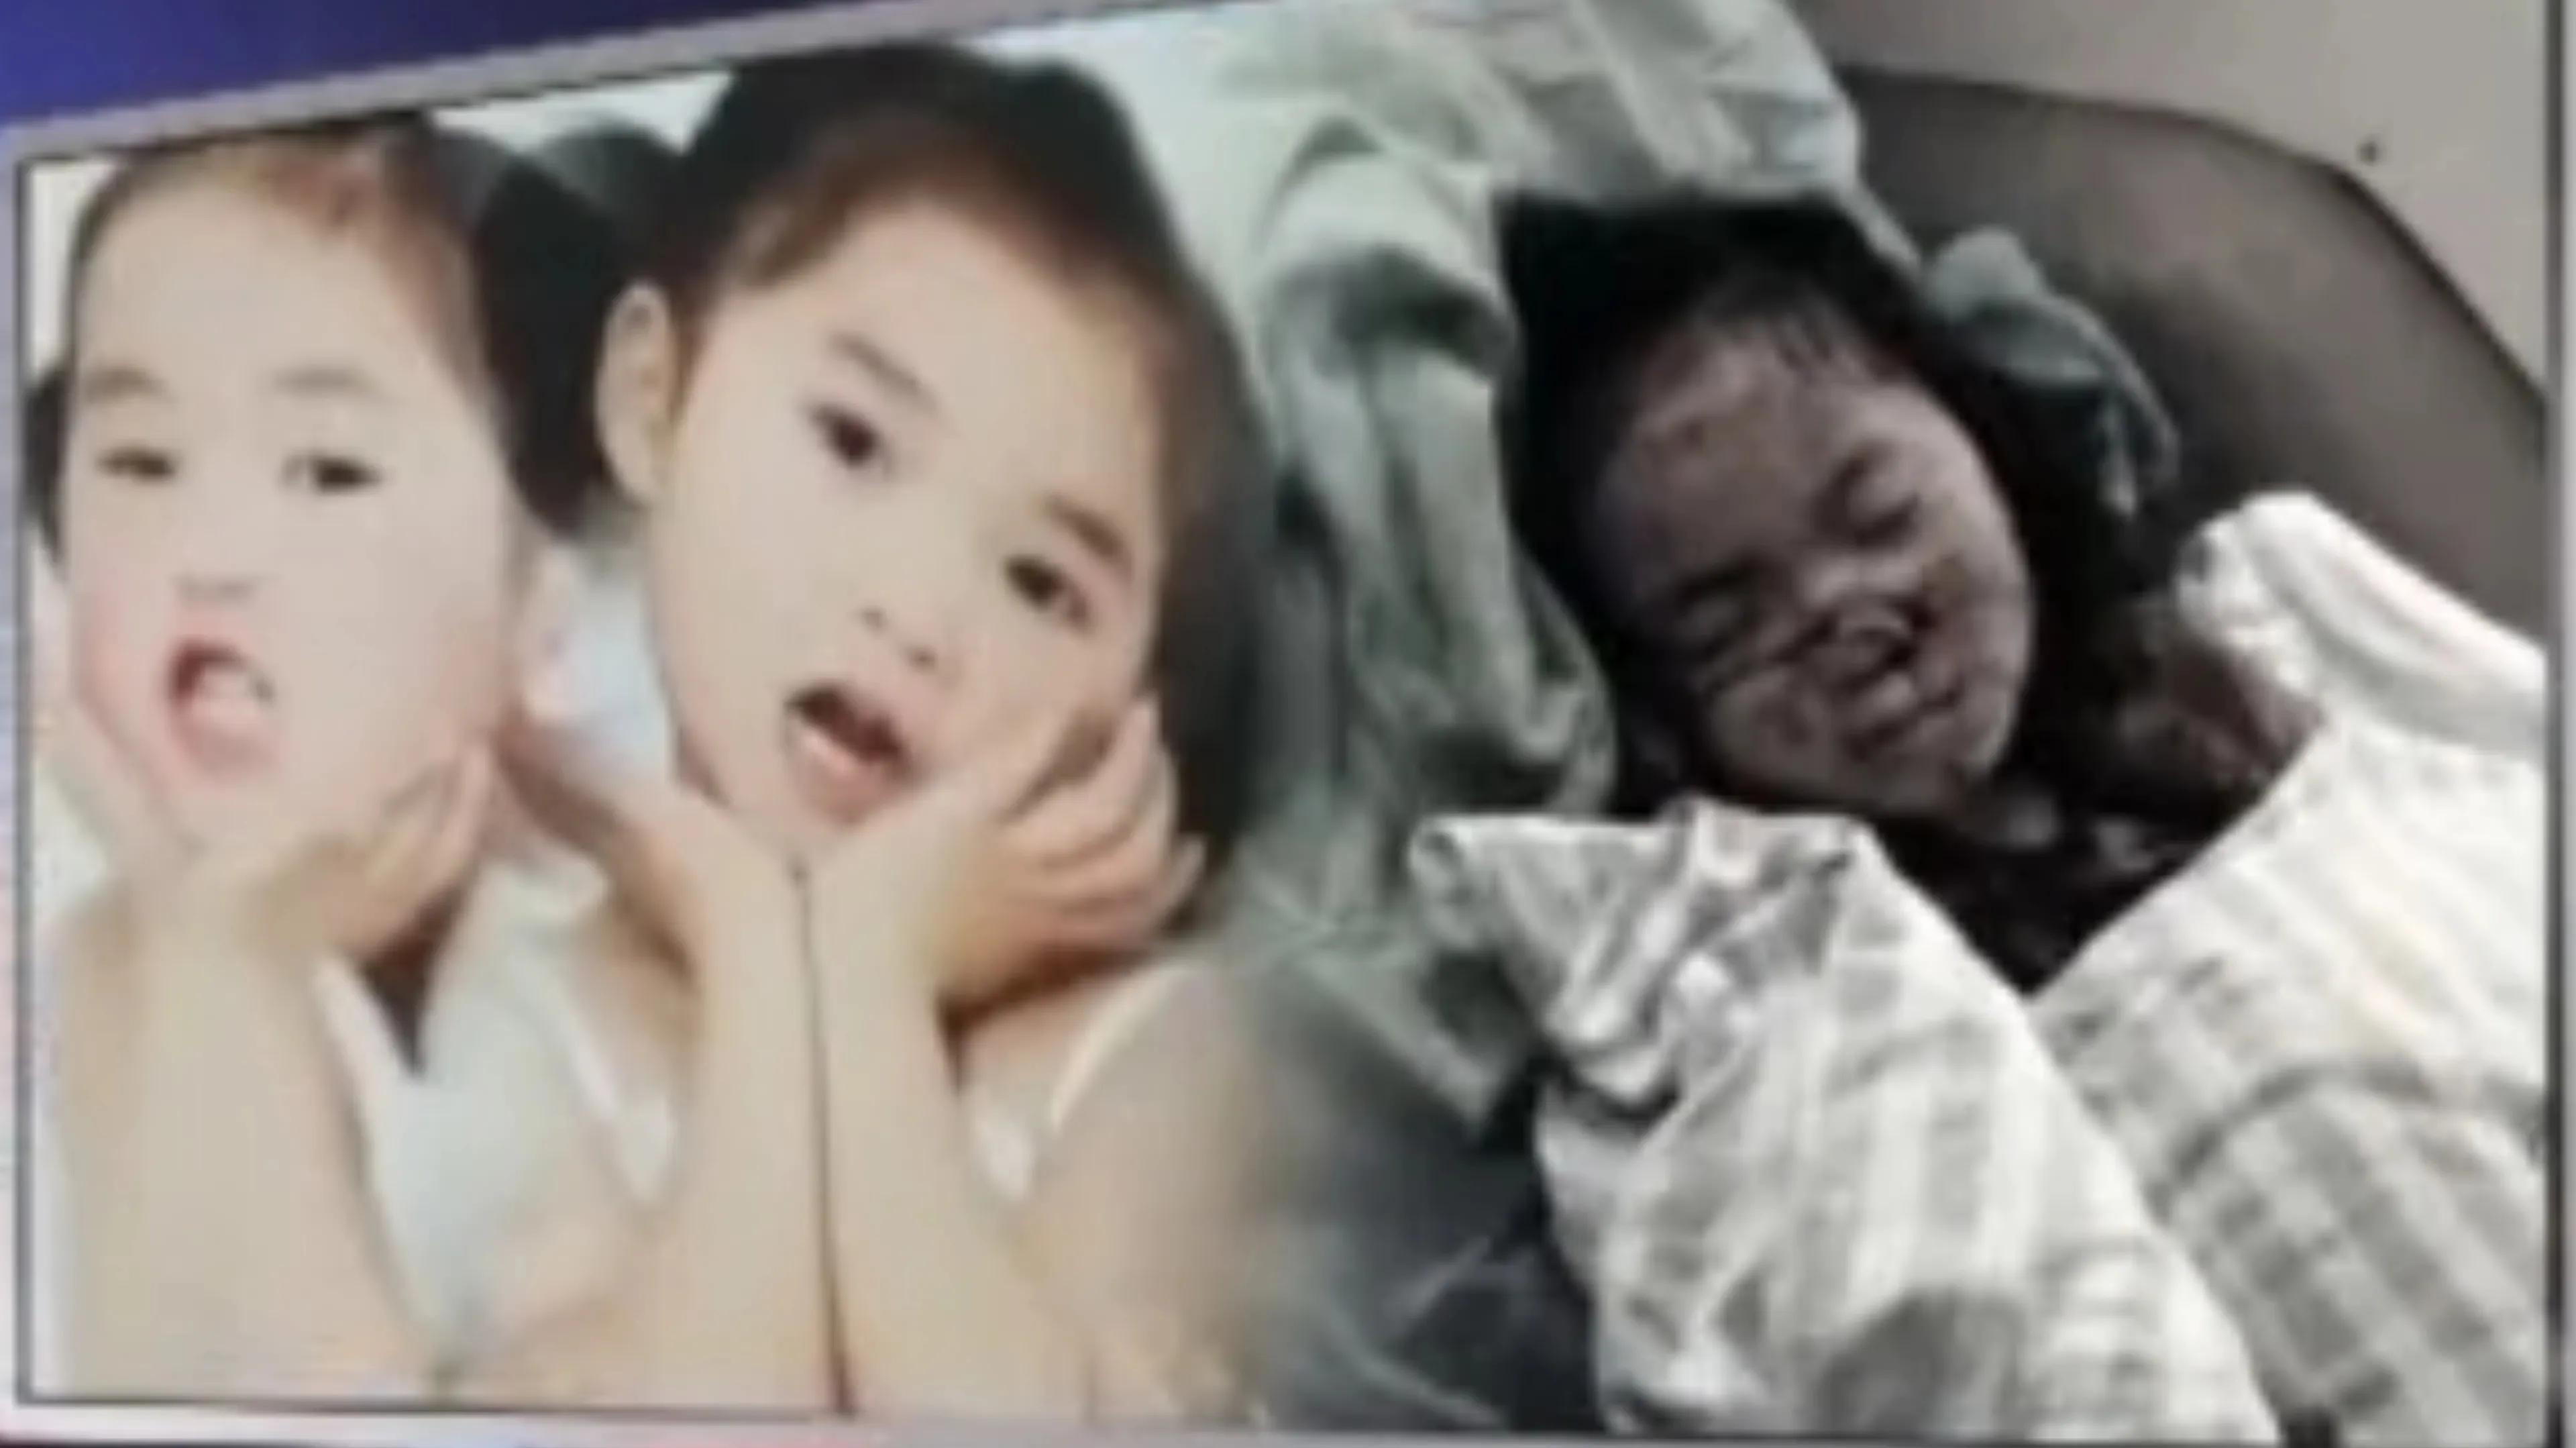 重庆双胞胎姐妹被砍伤案件